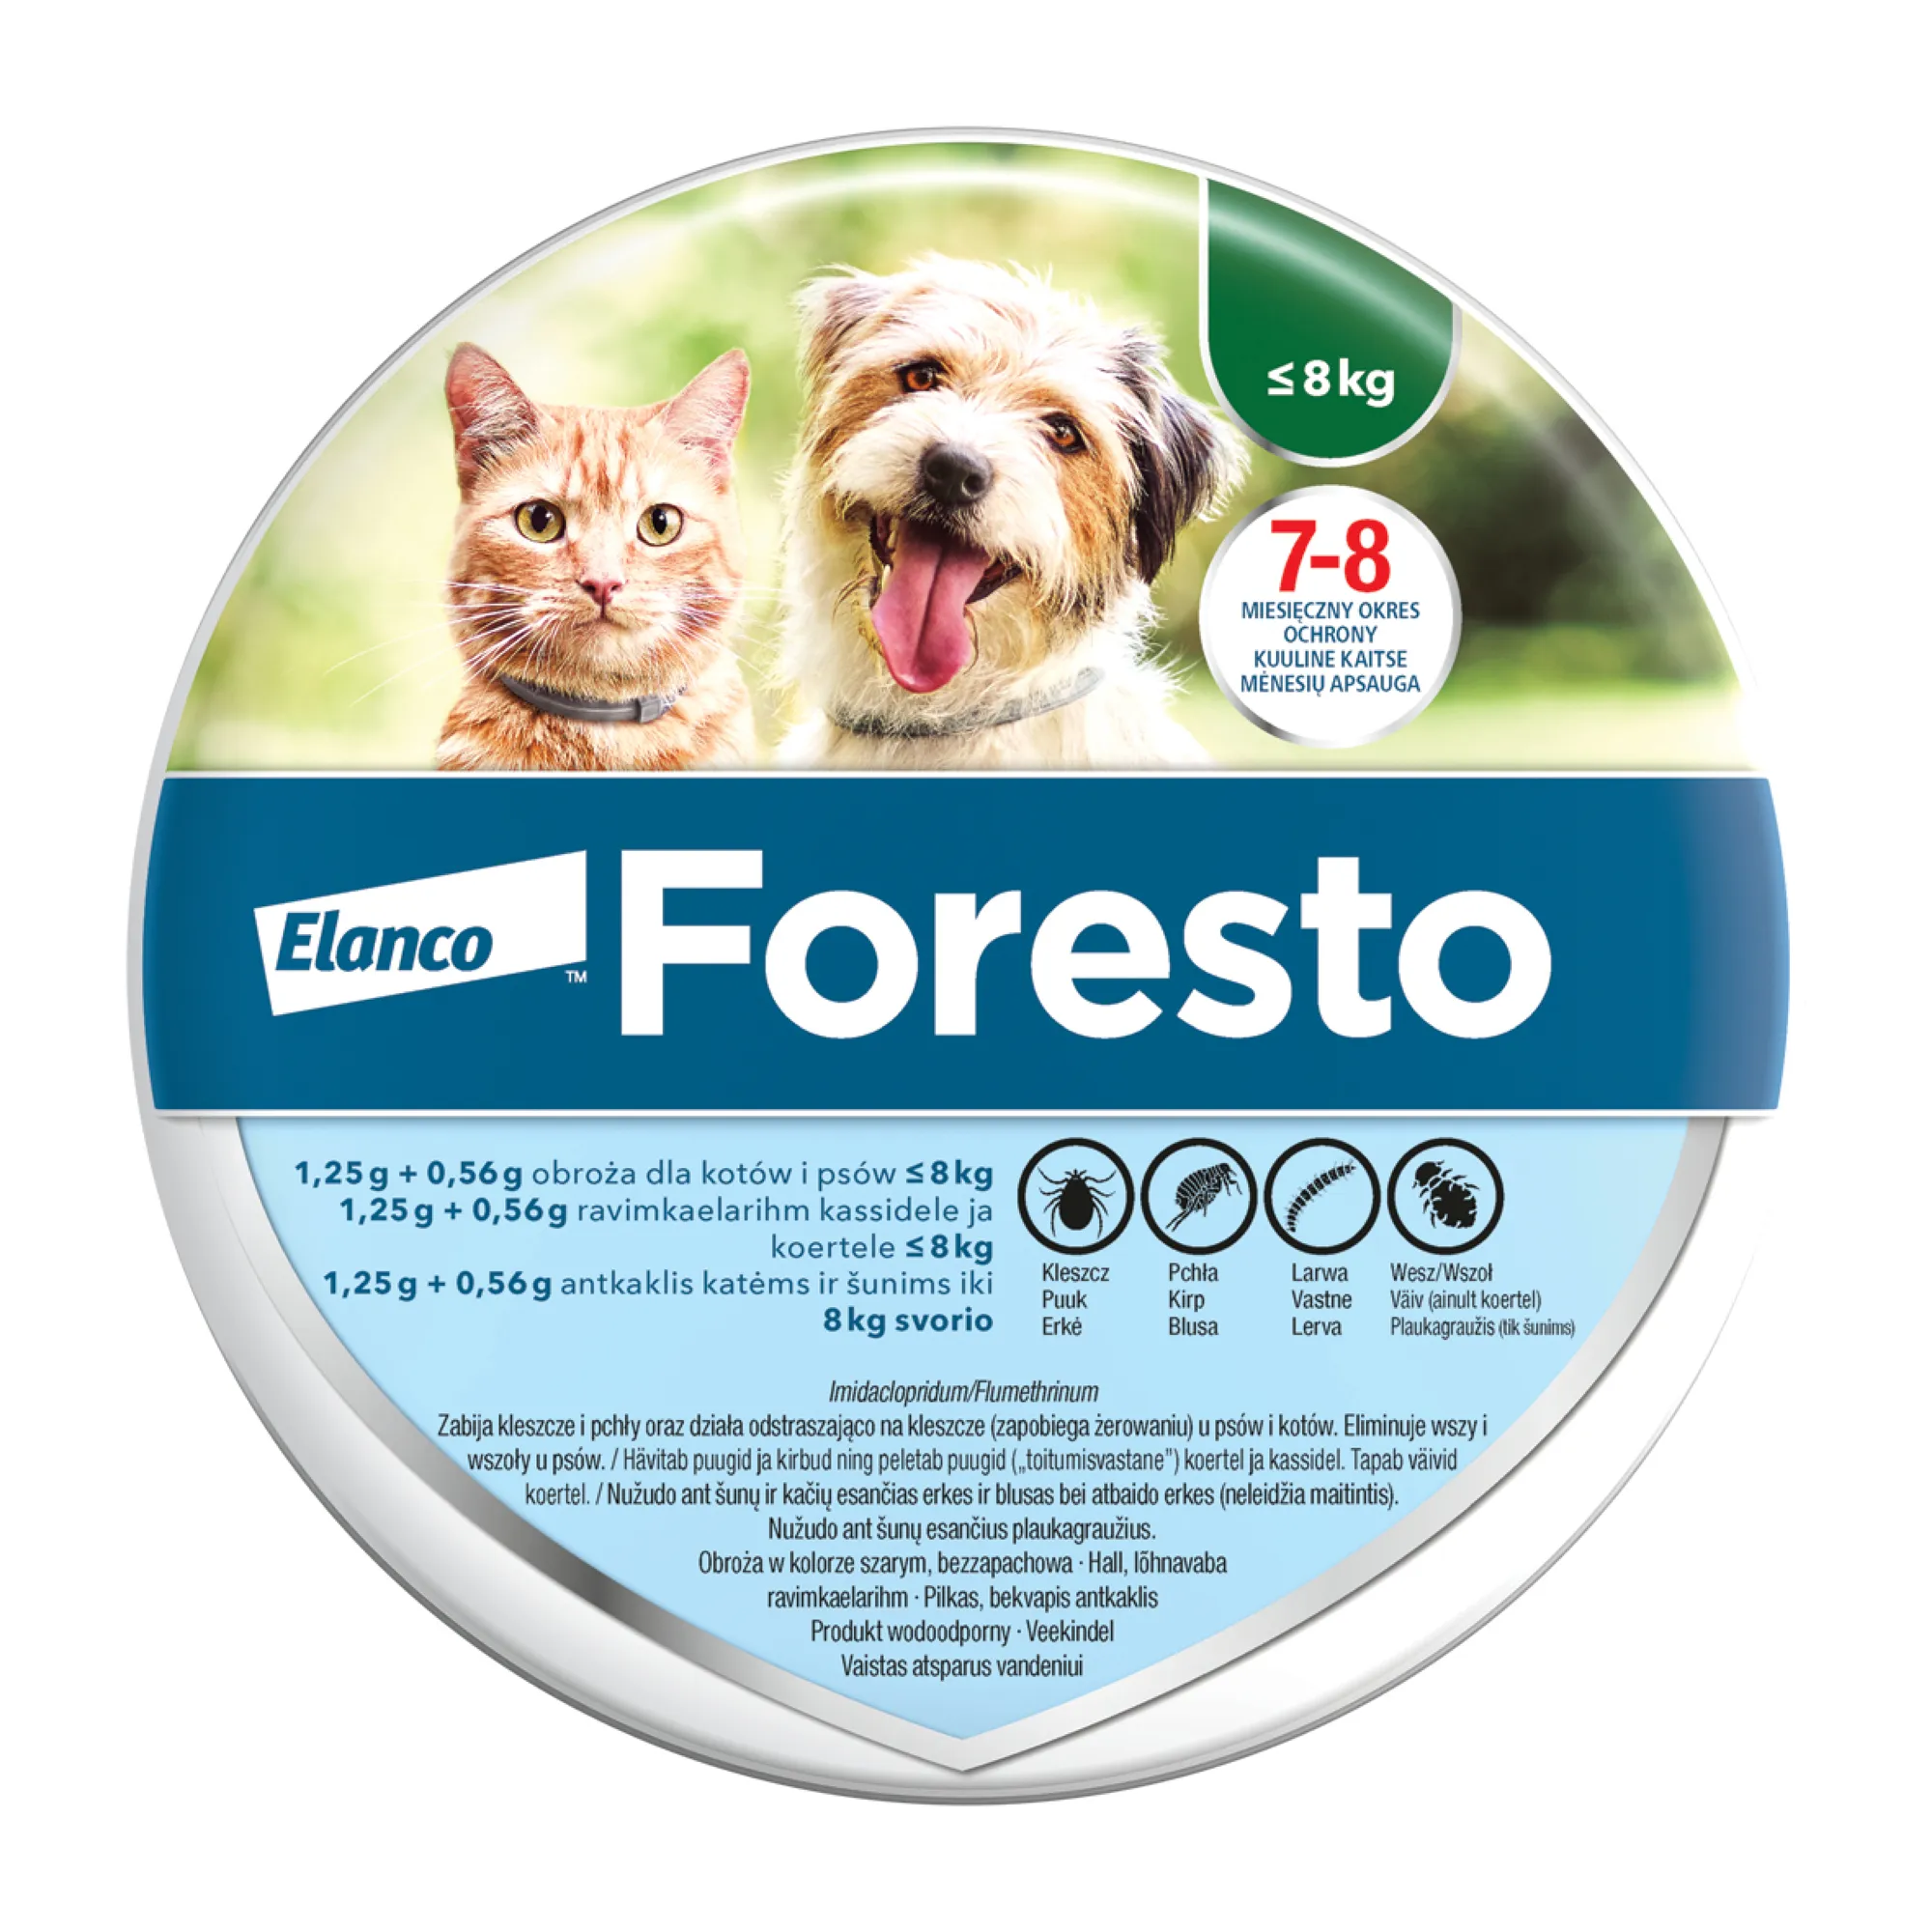 Foresto, 1,25 g + 0,56 g, obroża dla kotów i psów ≤ 8 kg, 1 sztuka